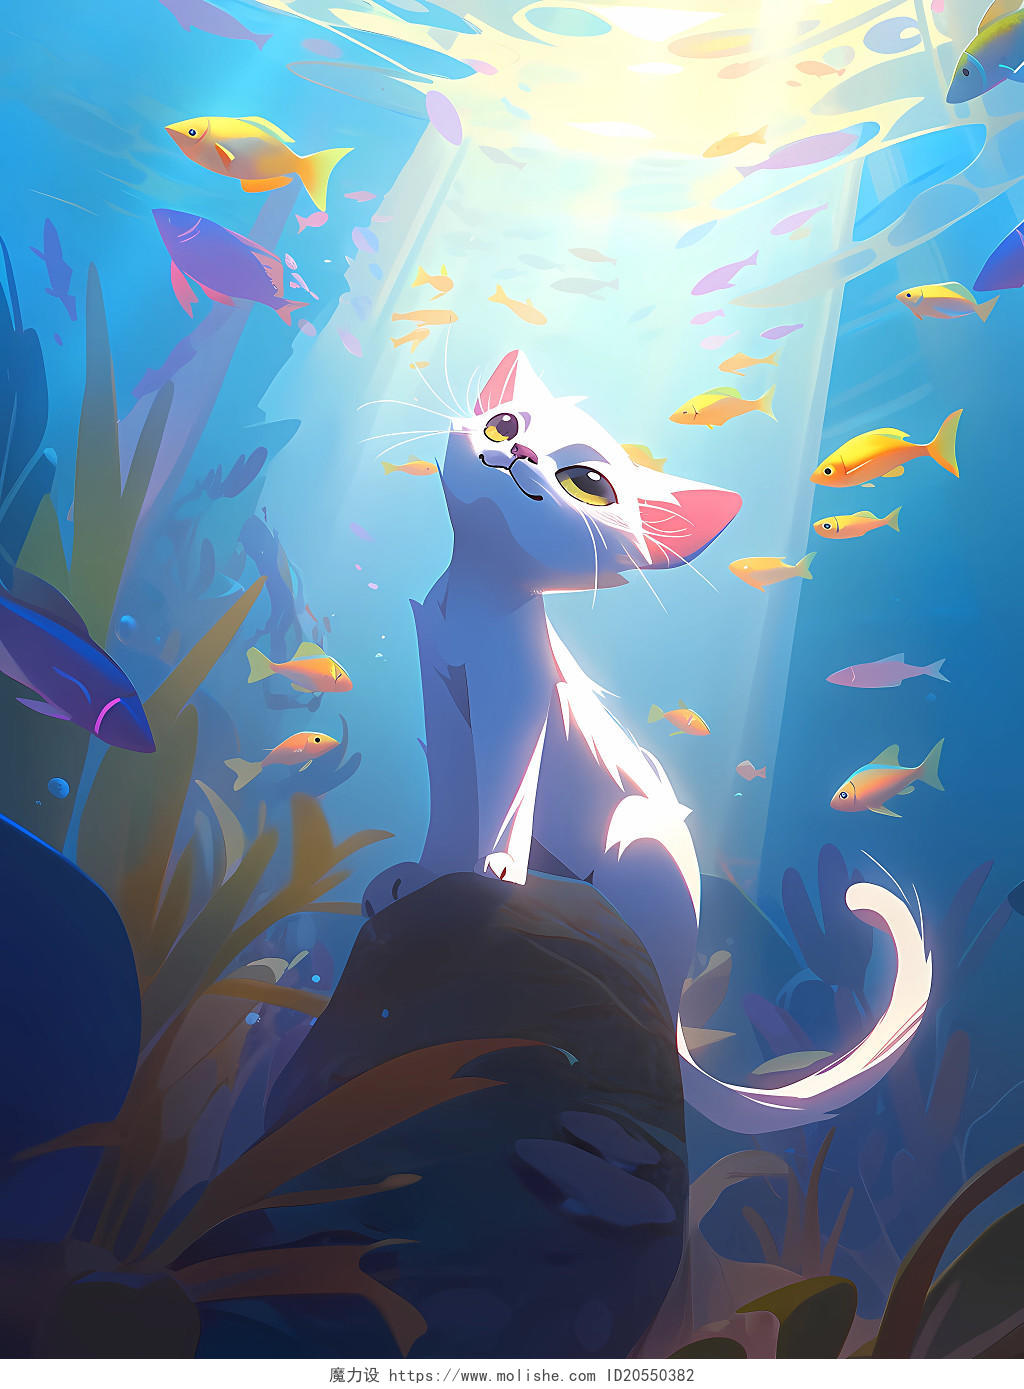 世界海洋日皮克斯风格小猫欣赏海底世界的可爱场景